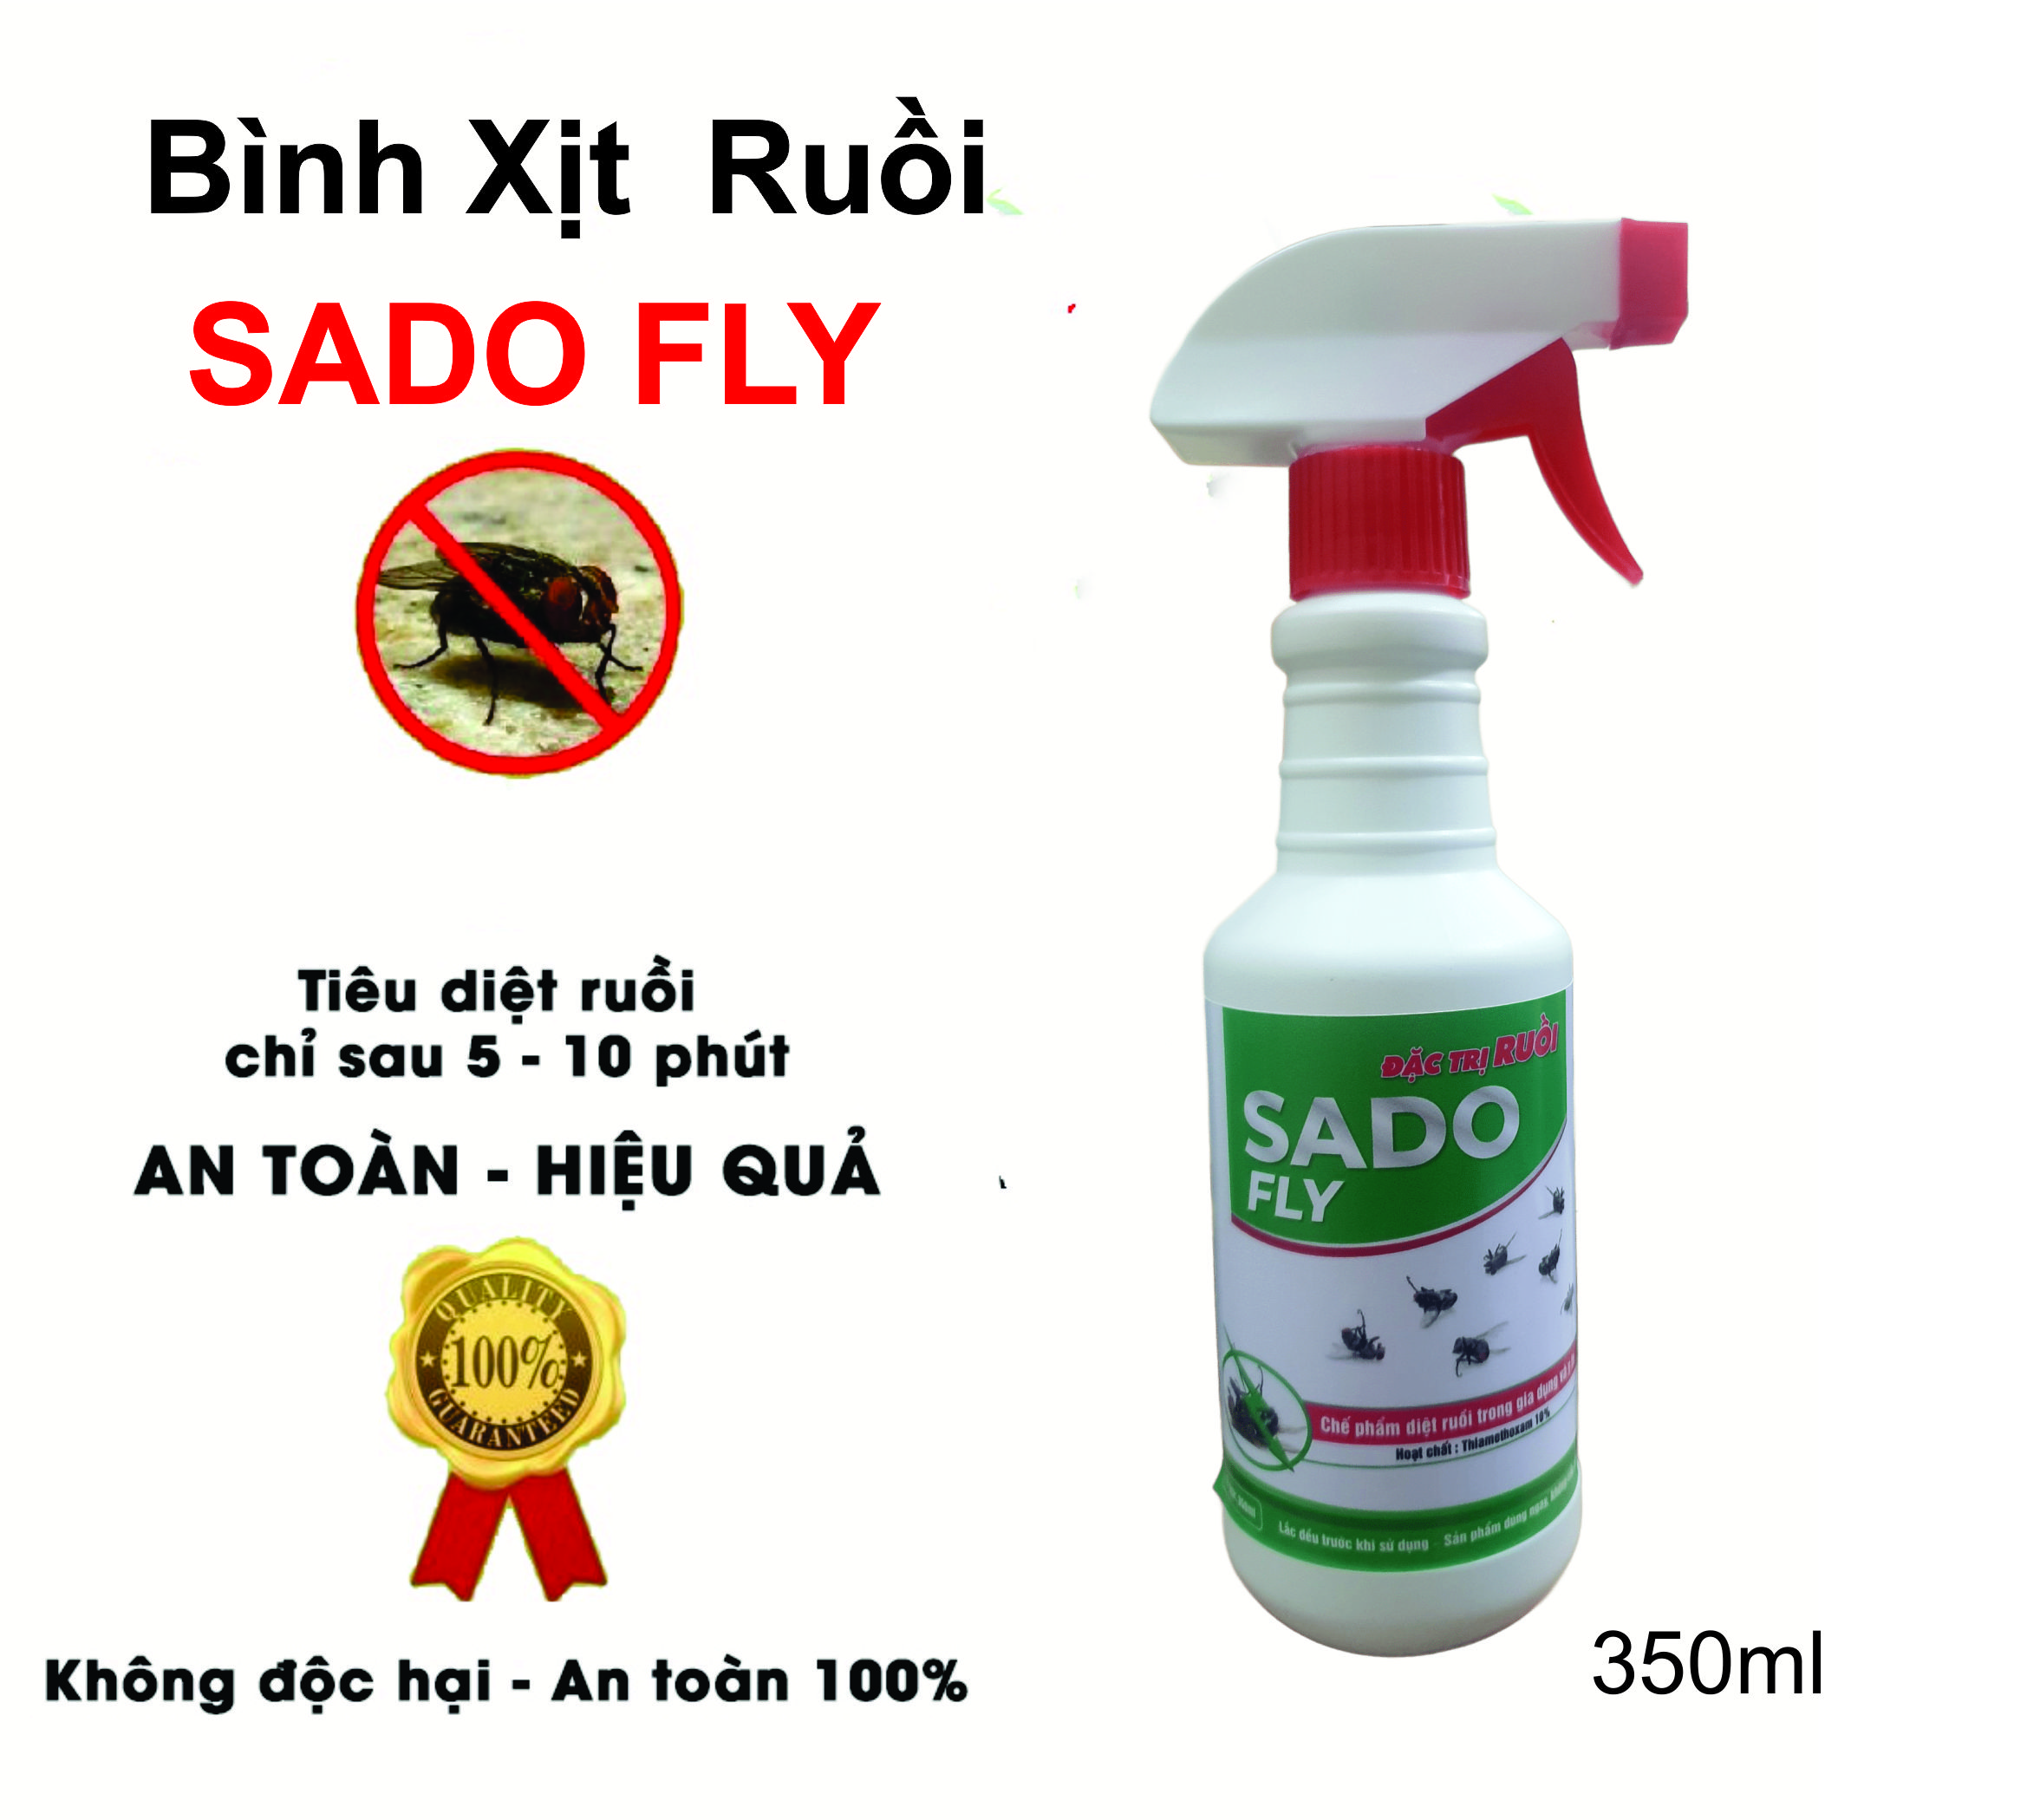 Thuốc Diệt Ruồi Sado Fly - Diệt Tất Cả Các Loại Ruồi - Chai 350ml